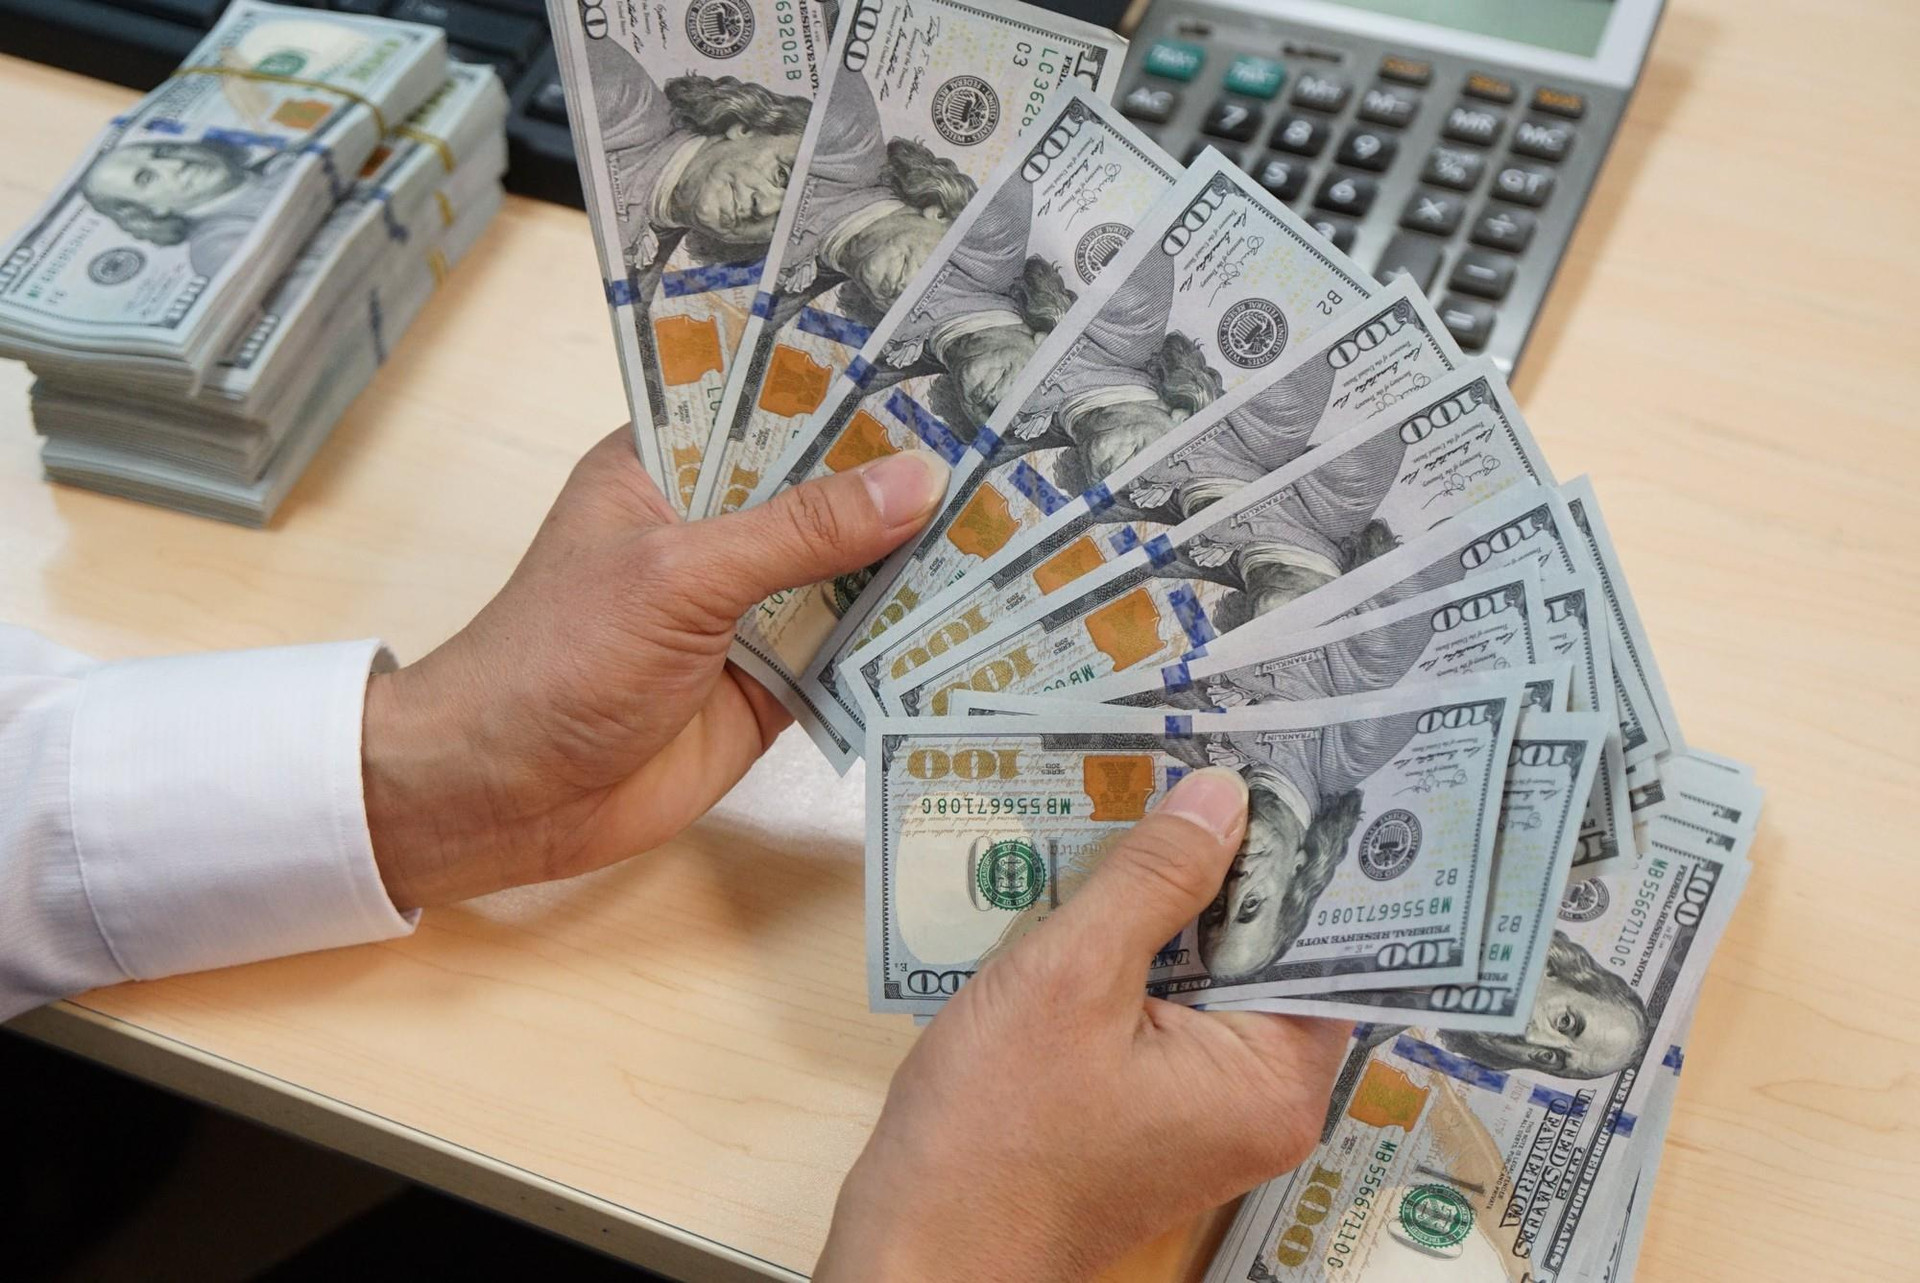 Giá USD ngân hàng tiếp tục tăng, lên gần 24.300 đồng - Ảnh 1.